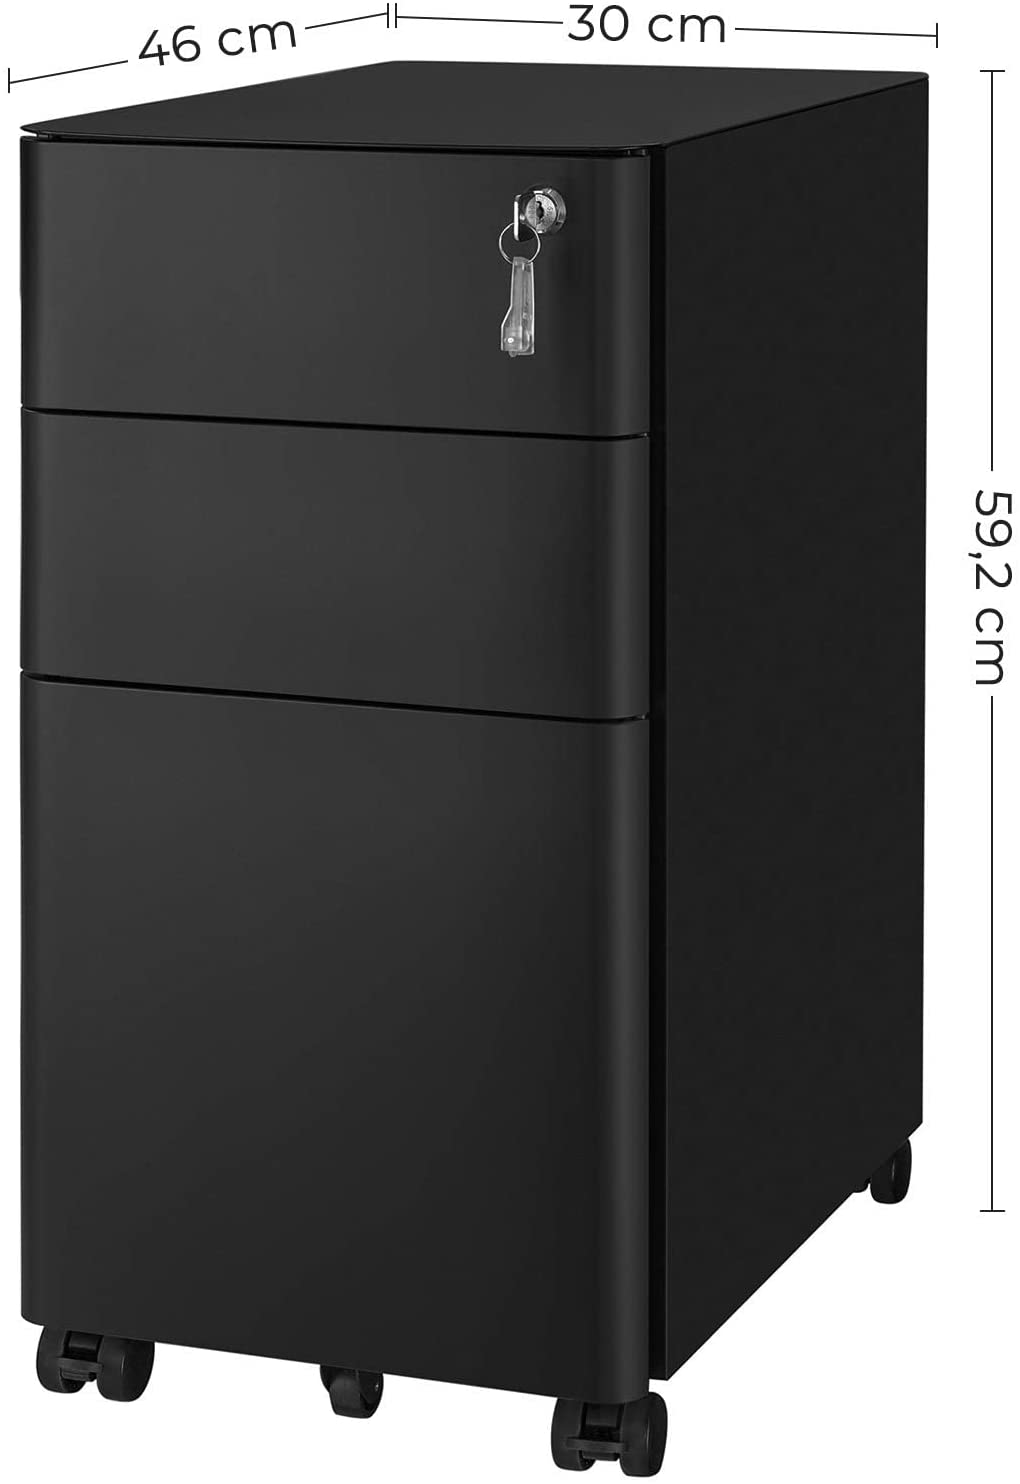 Mobil konténer, zárható Iratszekrény30 x 59,2 x 46 cm, fekete-VASBÚTOR